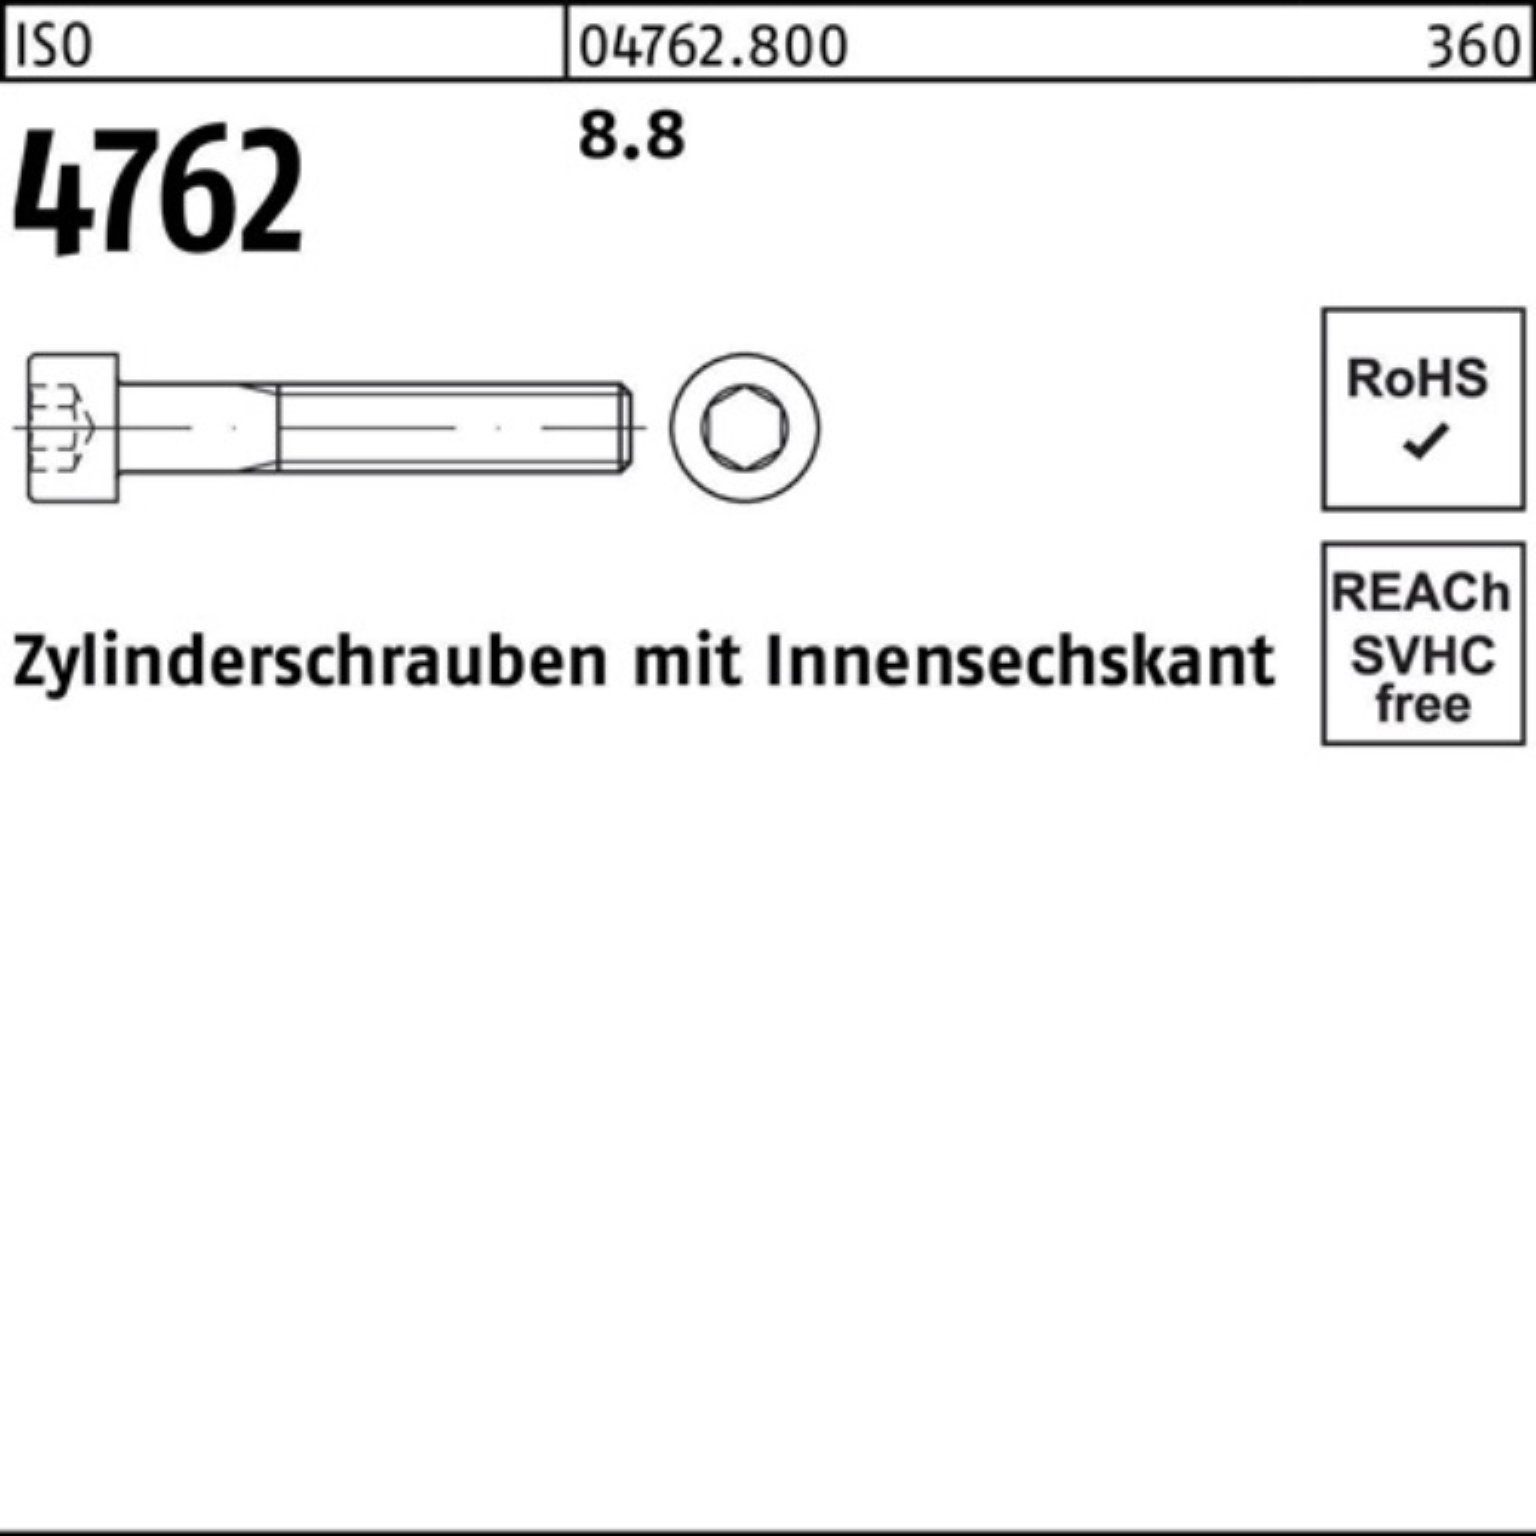 85 Reyher Zylinderschraube Stück Pack M6x 8.8 200 4762 200er I Innen-6kt ISO Zylinderschraube